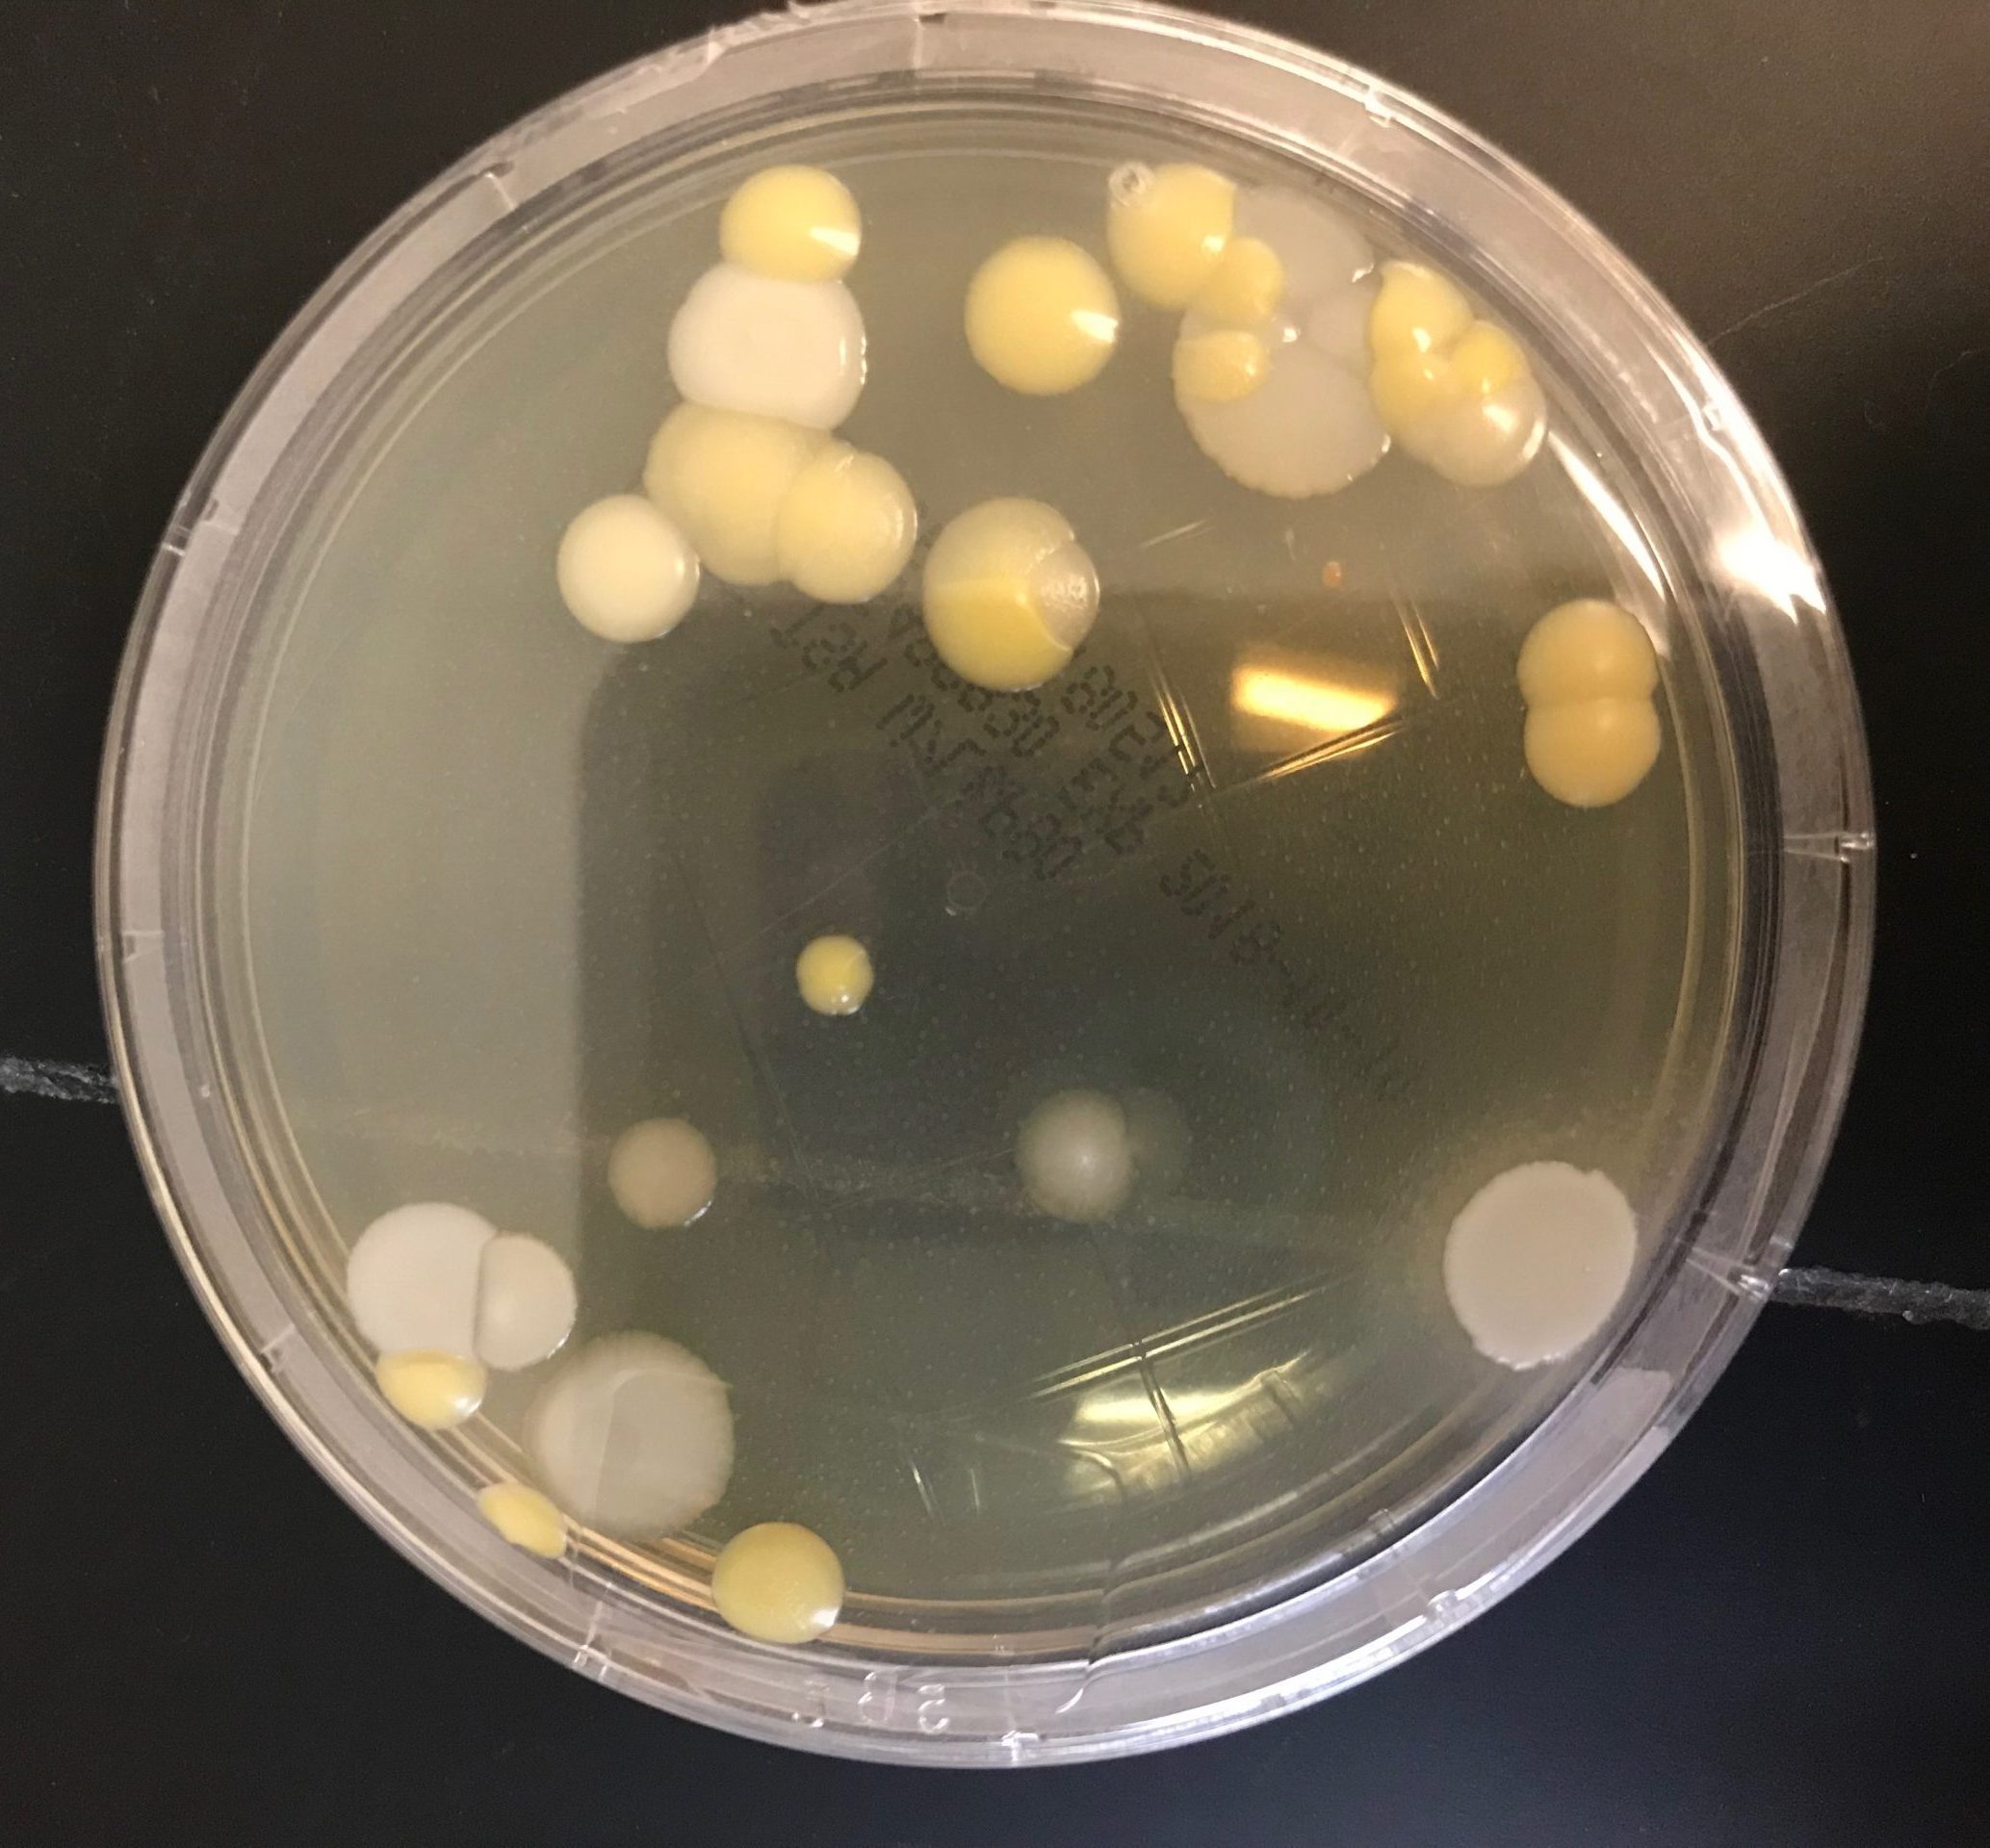 Bacterias en placas Rodac - Programa Microbiología Ambiental en industria de GMP - Dra. Eileen Ruiz - 29/septiembre/2018